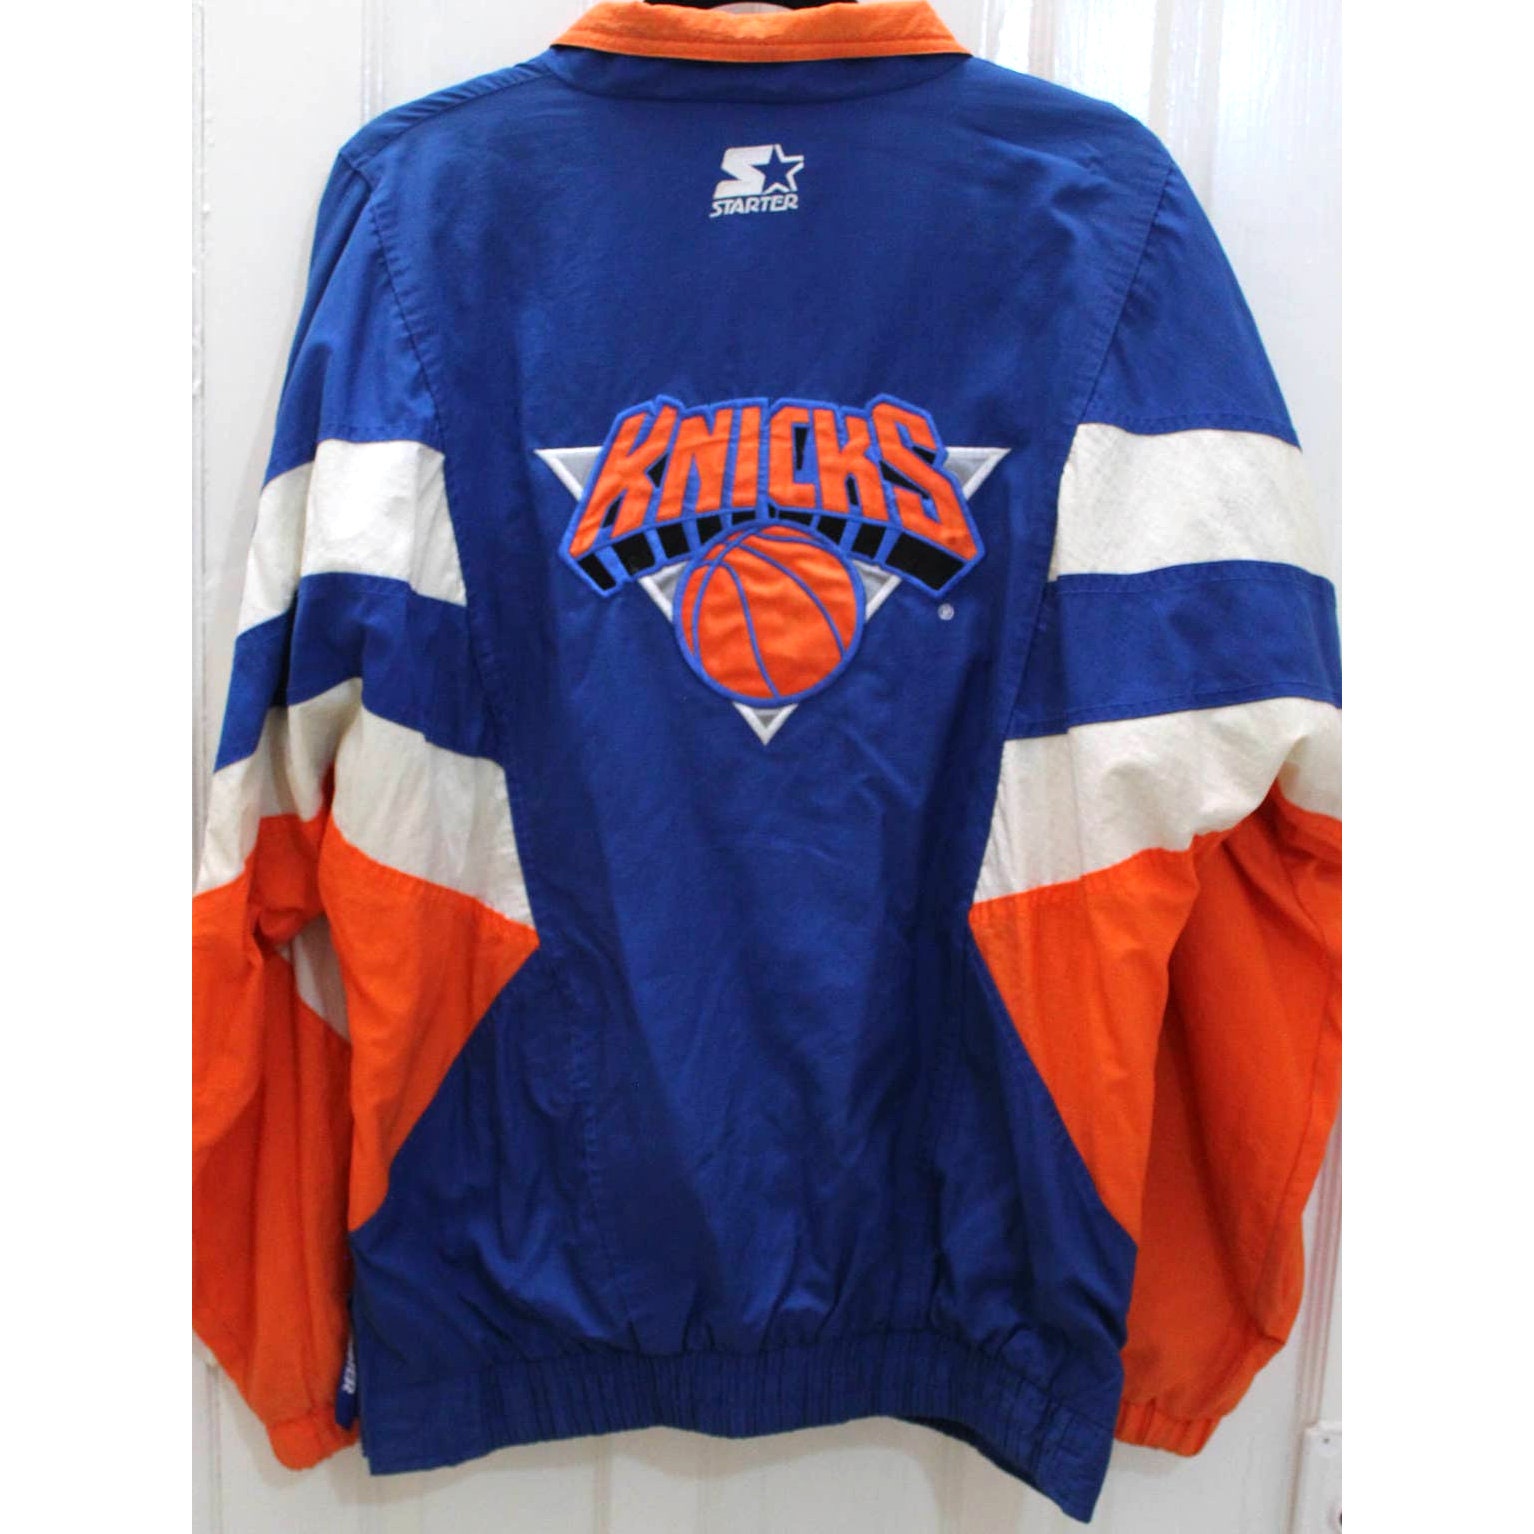 Vintage 1990's New York Knicks #33 Blank Jersey Sz. 48